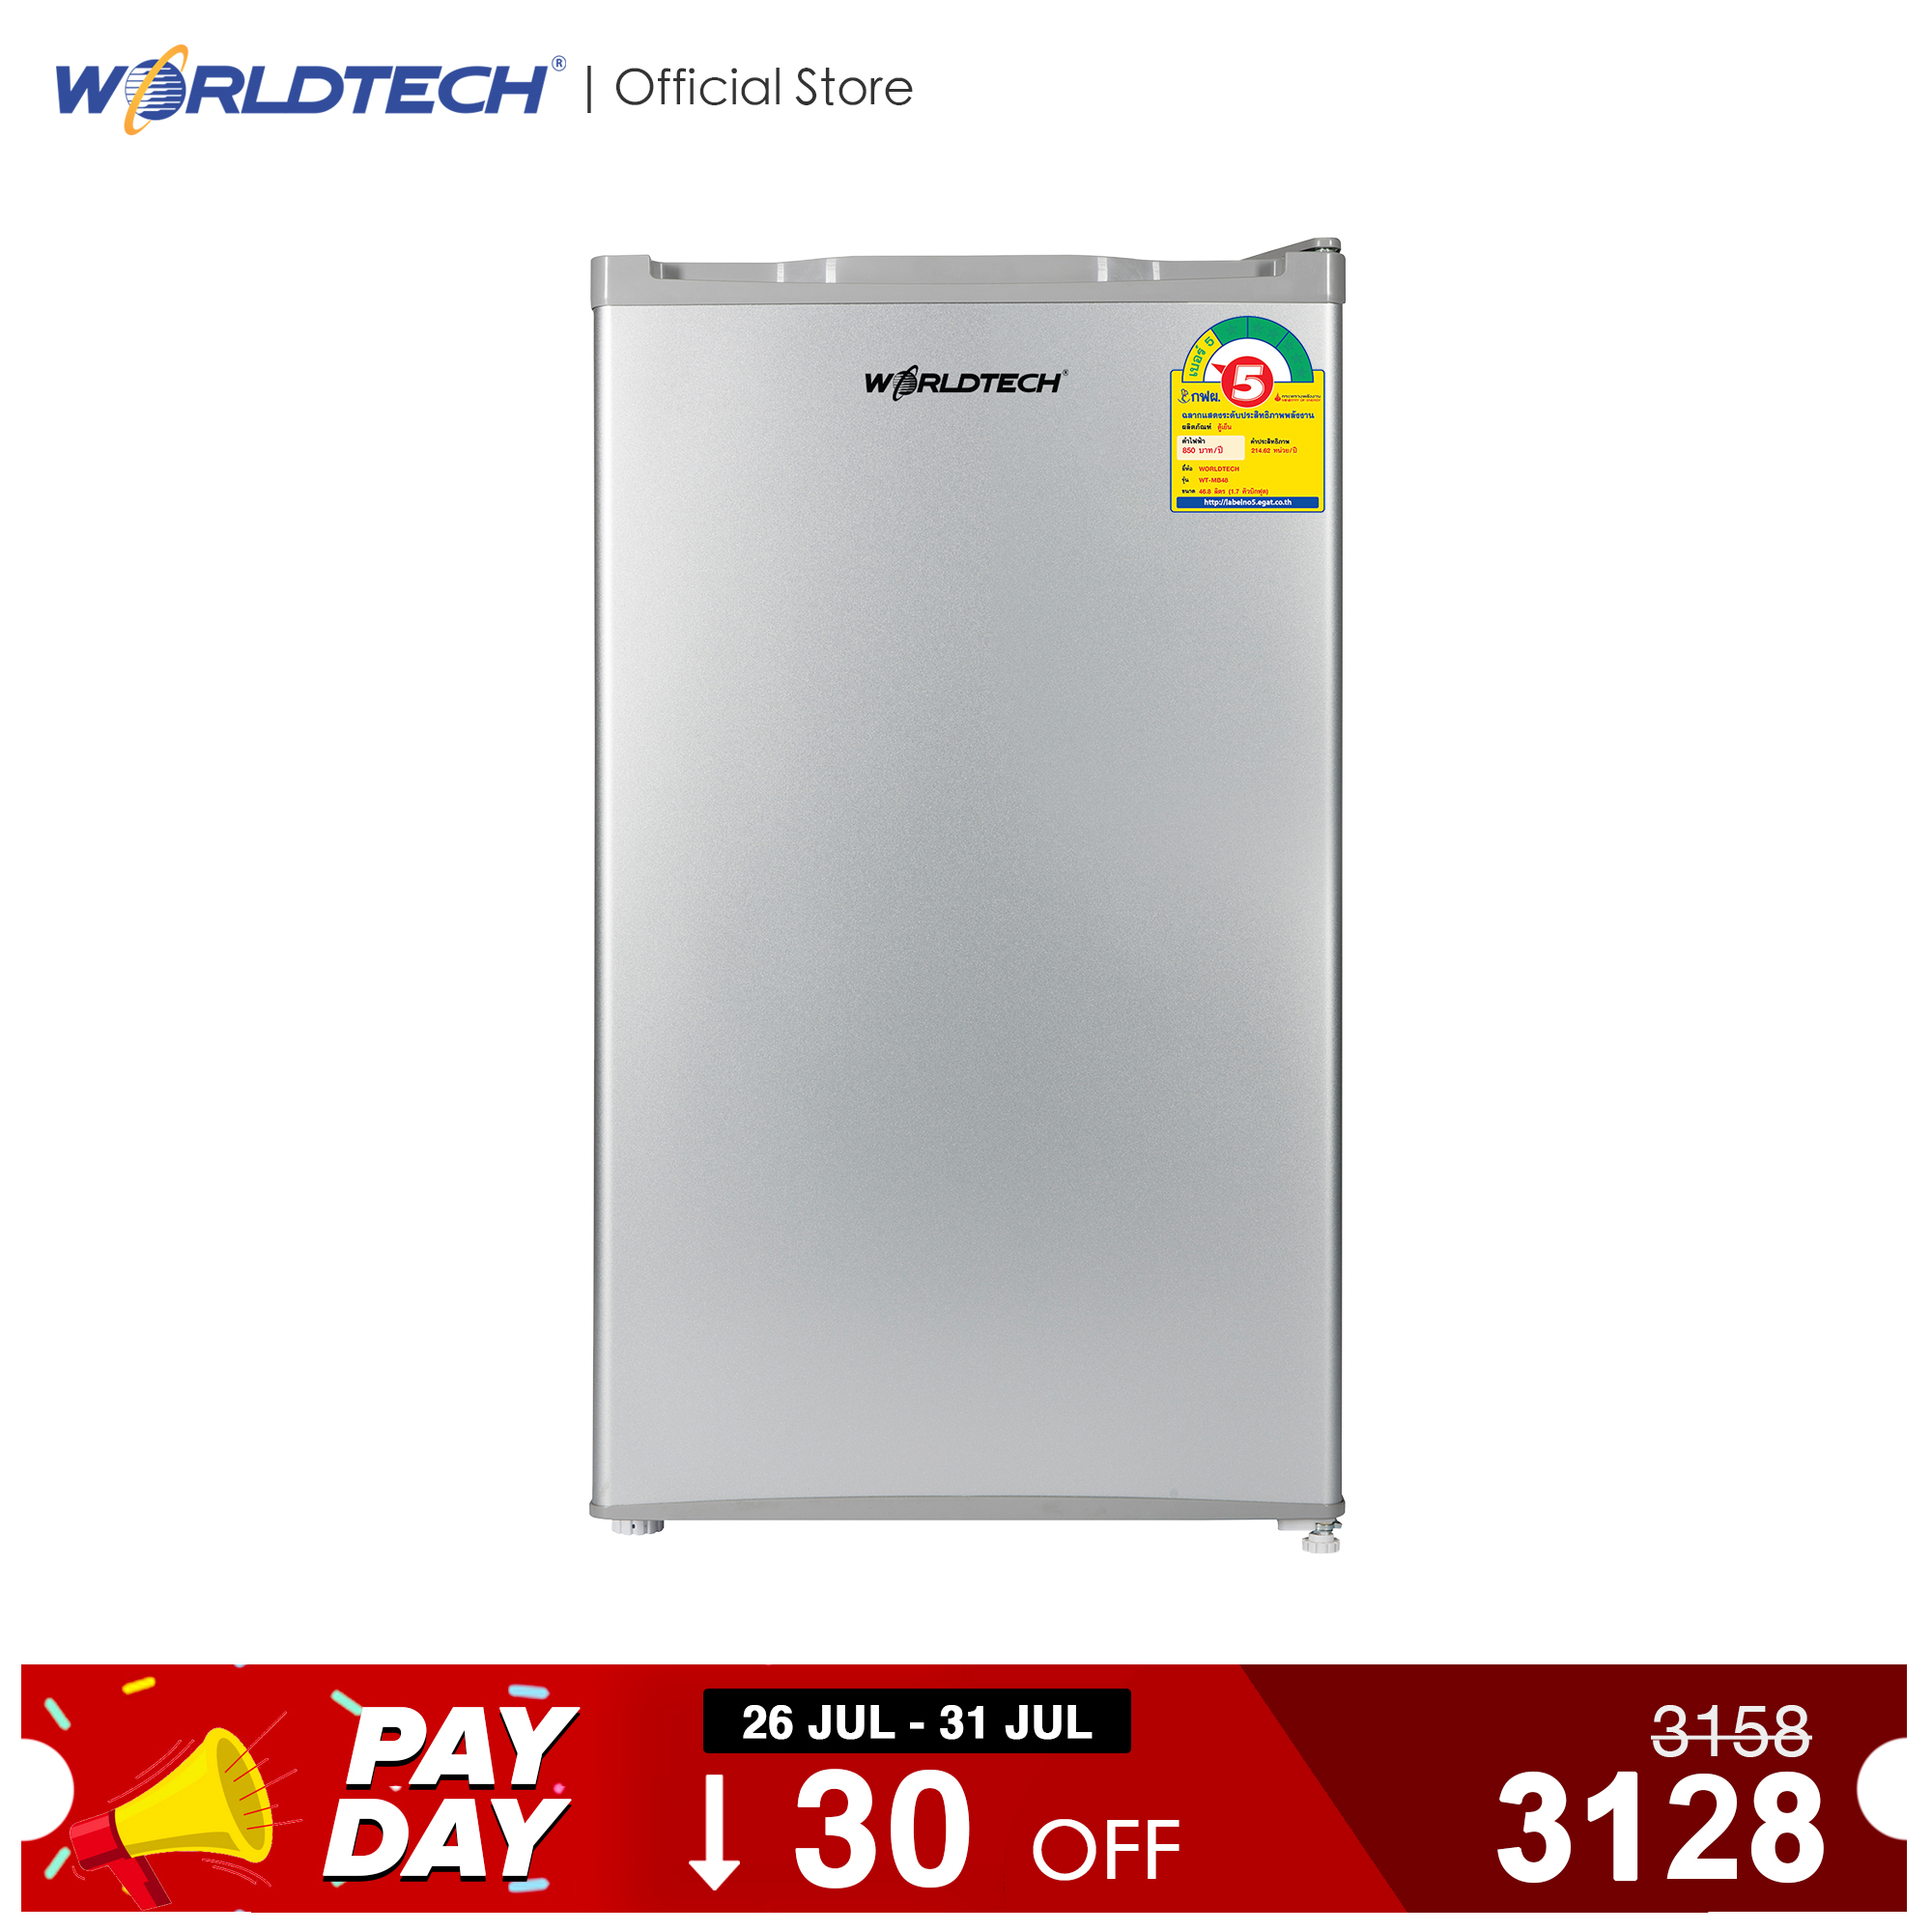 Worldtech ตู้เย็นเล็ก 3.3 คิว รุ่น WT-RF101 ตู้เย็นขนาดเล็ก ตู้เย็นมินิ ตู้แช่ ตู้เย็นทำน้ำแข็งได้ ความจุ 92 ลิตร แบบ 1 ประตู ตู้เย็นประหยัดไฟเบอร์ 5 รับประกัน 1 ปี